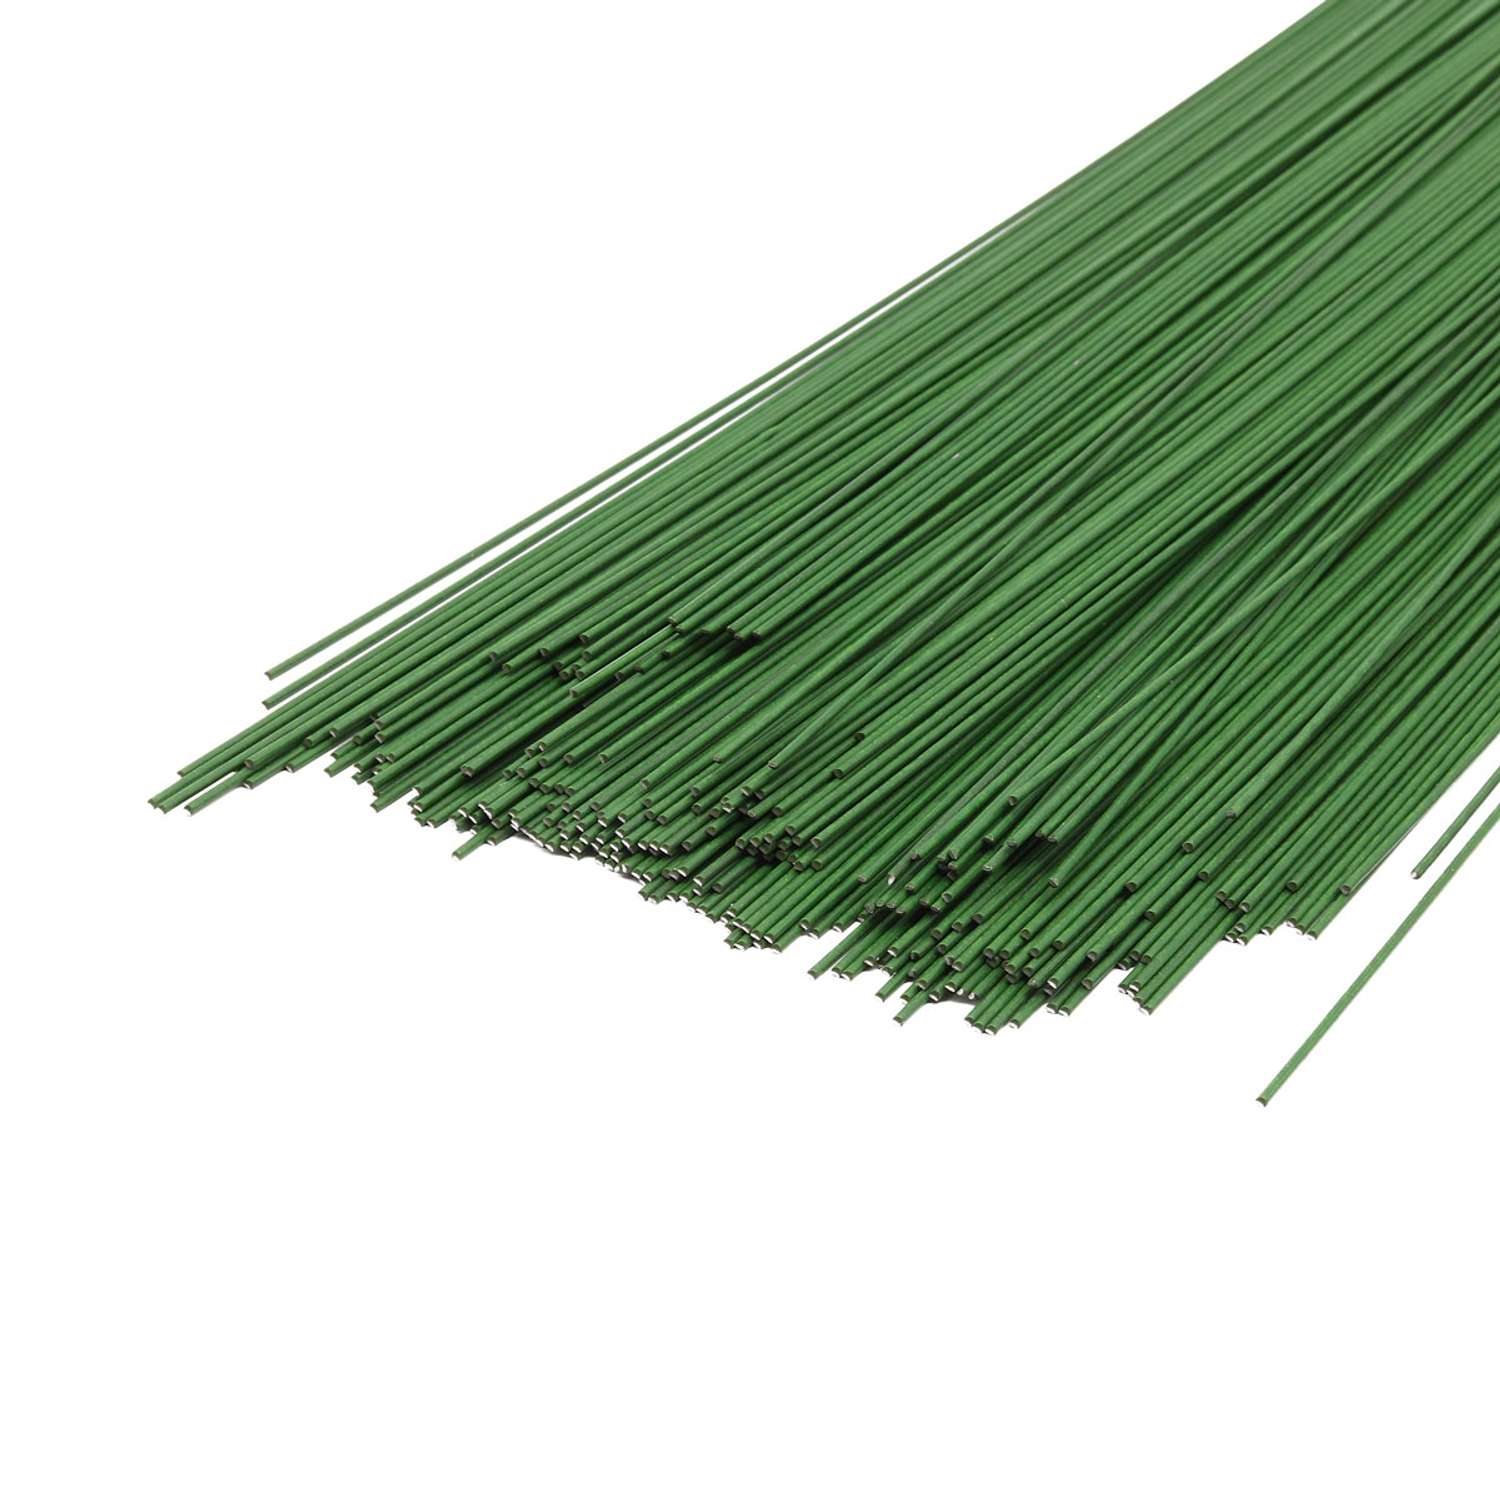 Проволока флористическая Айрис для рукоделия цветов создания композиции плетения каркасов зеленая 1 кг х 1.2 мм - фото 1